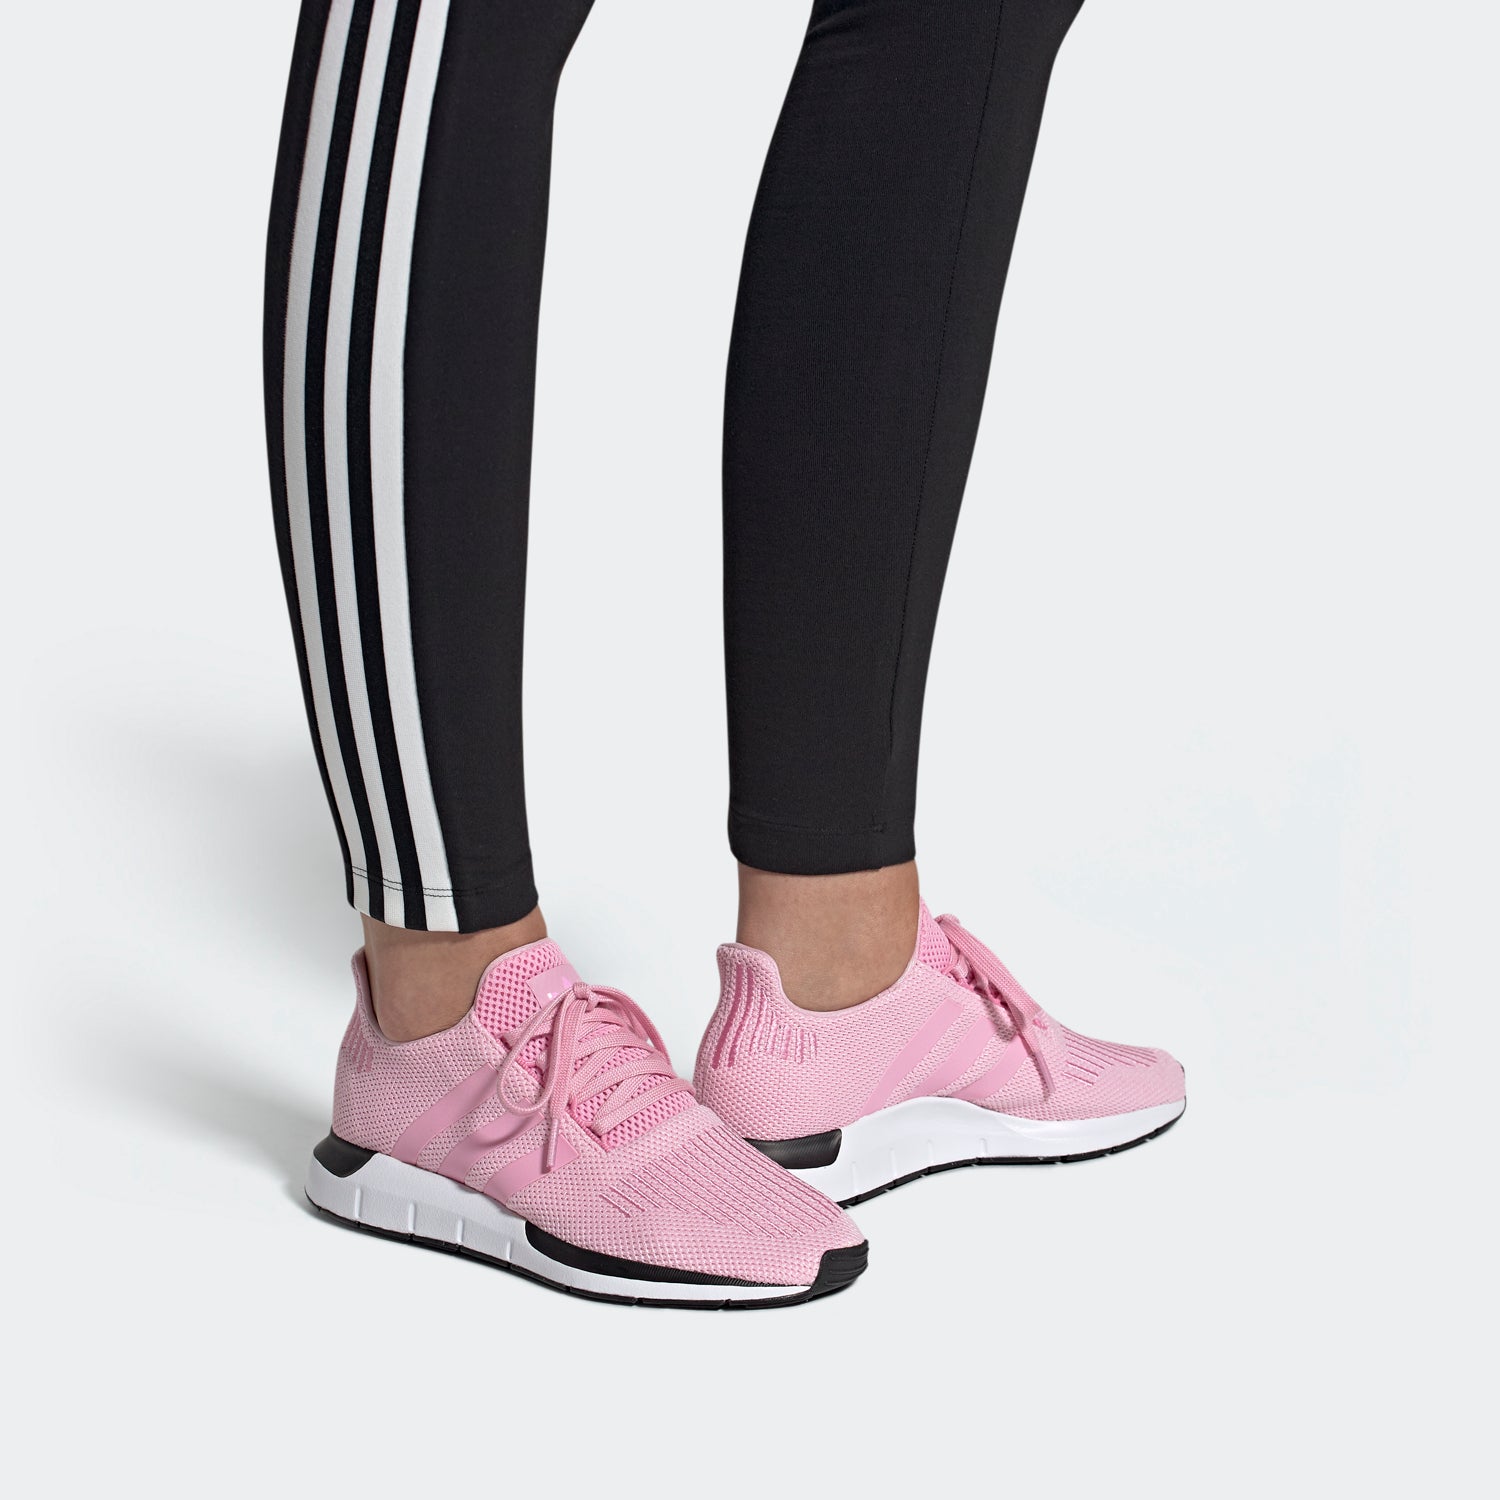 adidas women's swift run shoes